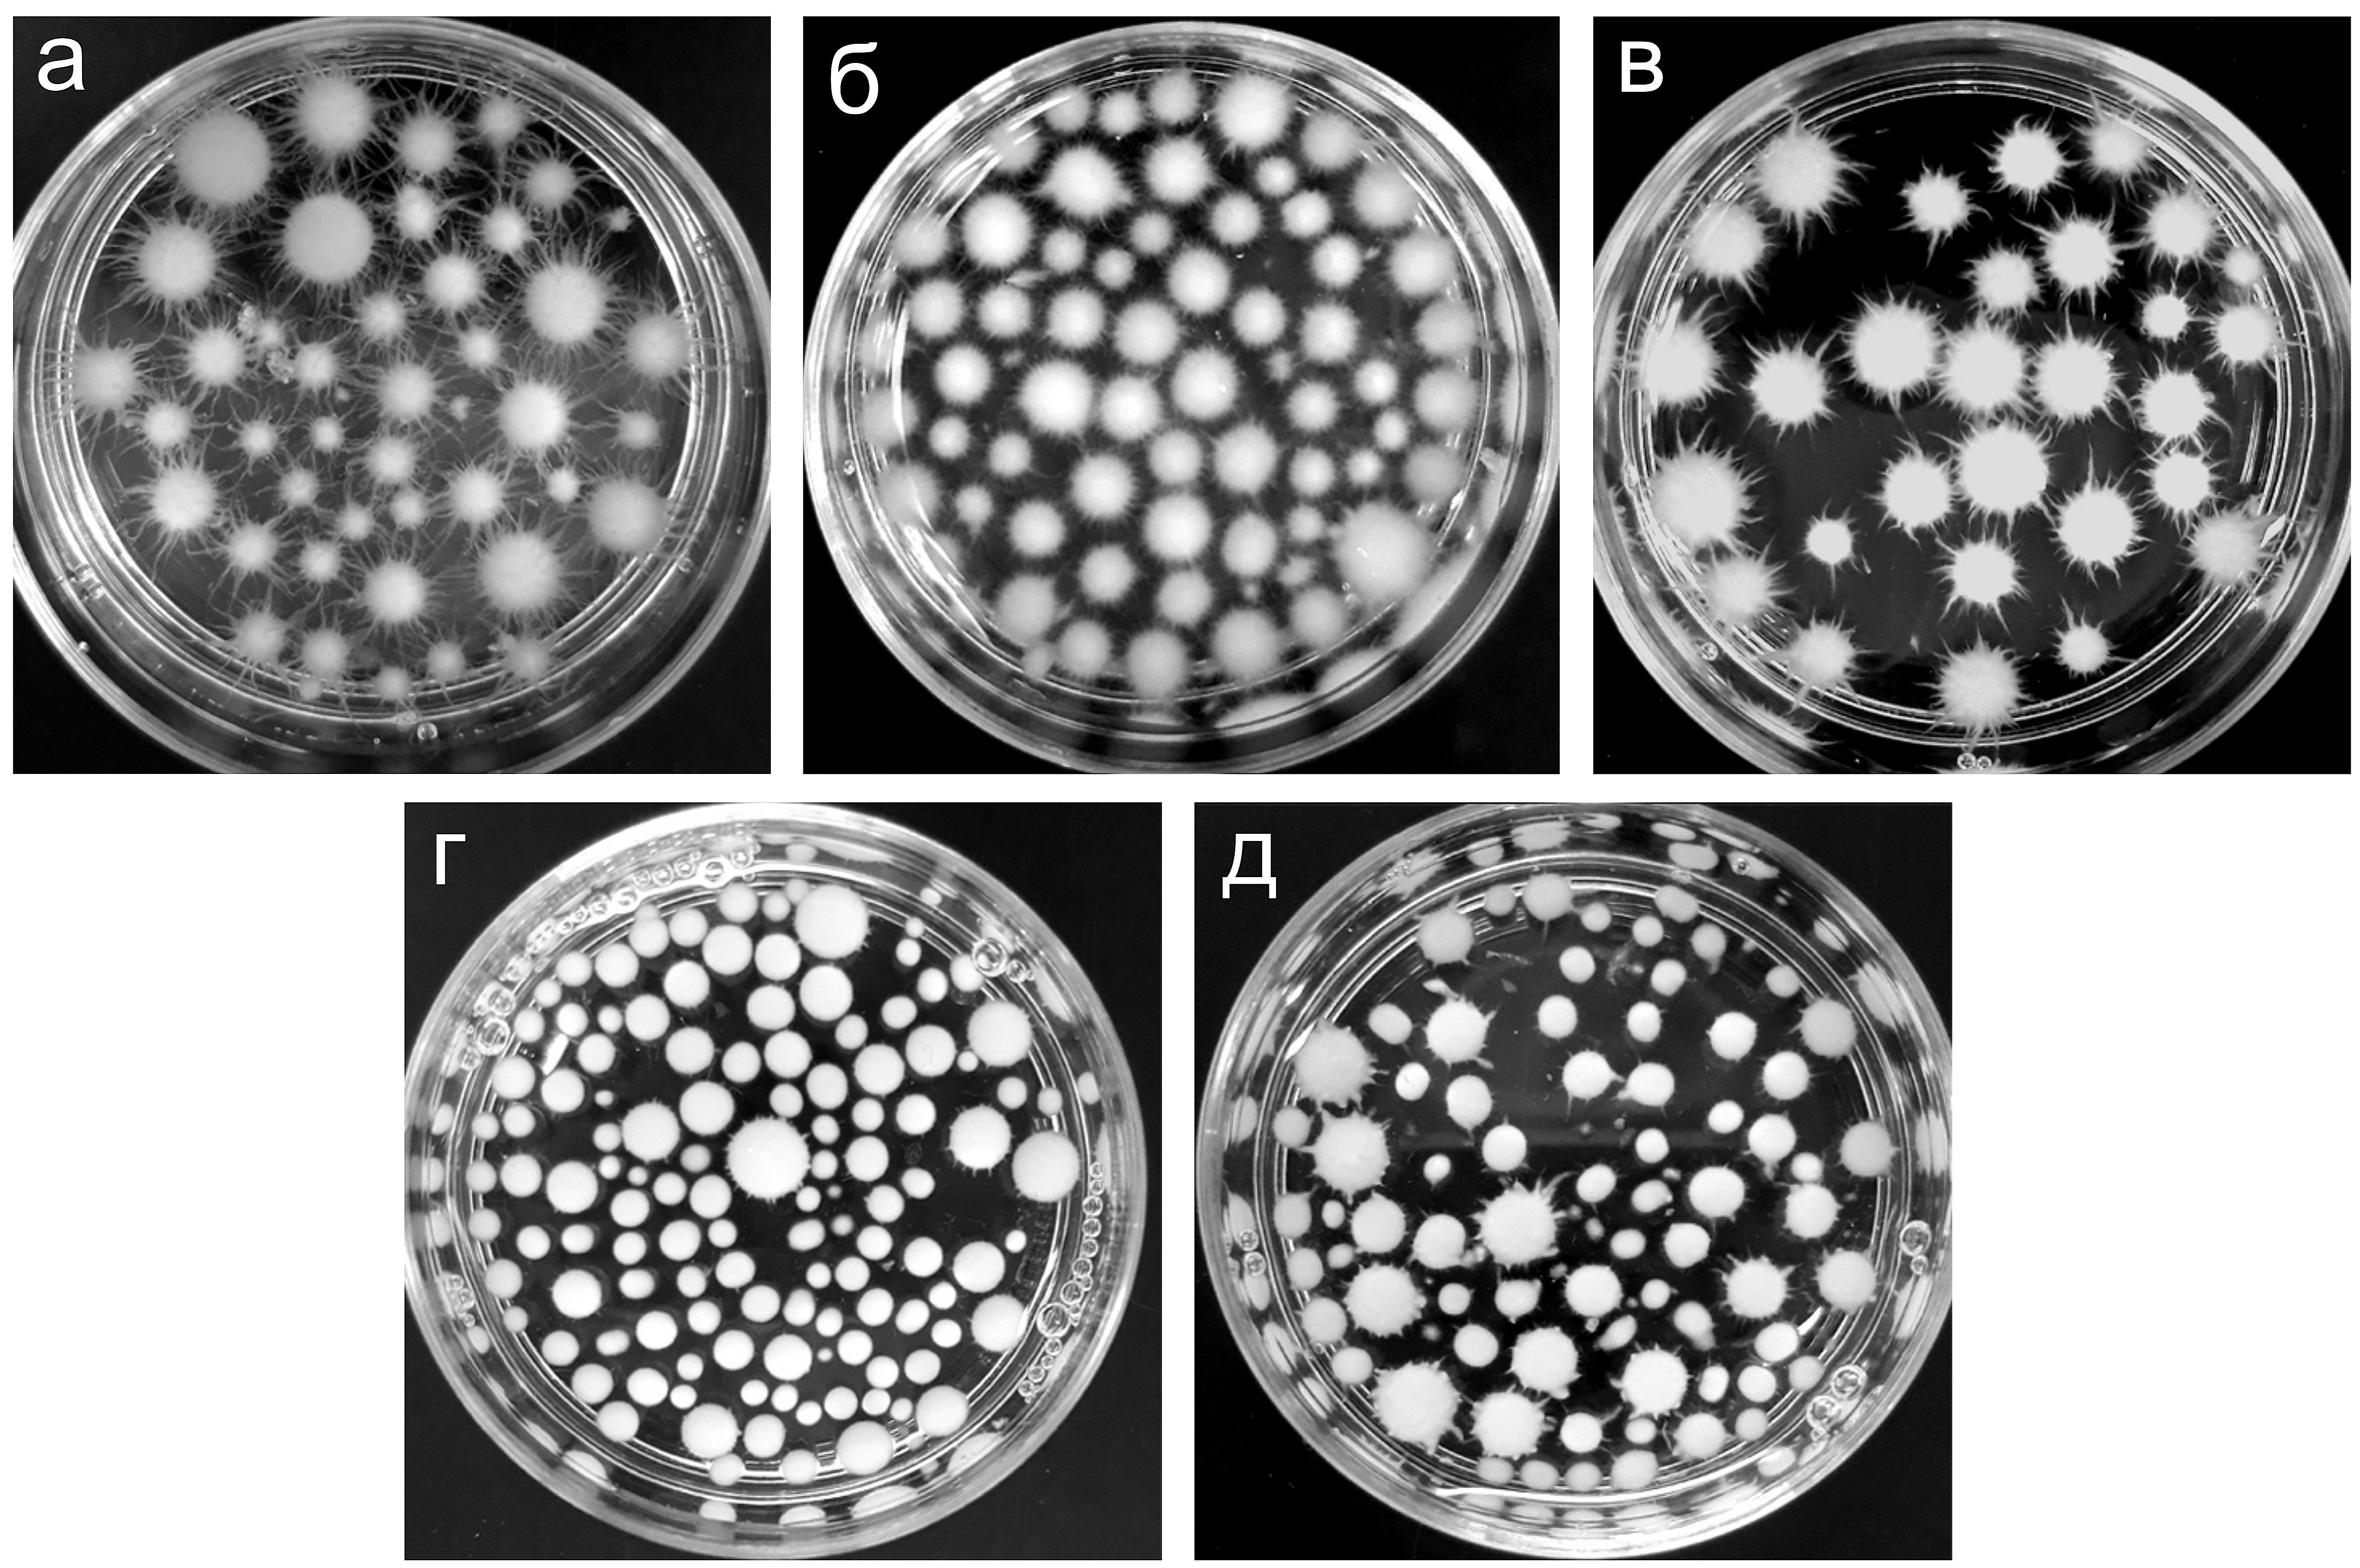 Морфология глобул мицелия базидиомицета N. nambi при погруженном культивировании в разных питательных средах: а – PD; б – PS; в – ME; г – S; д – YM